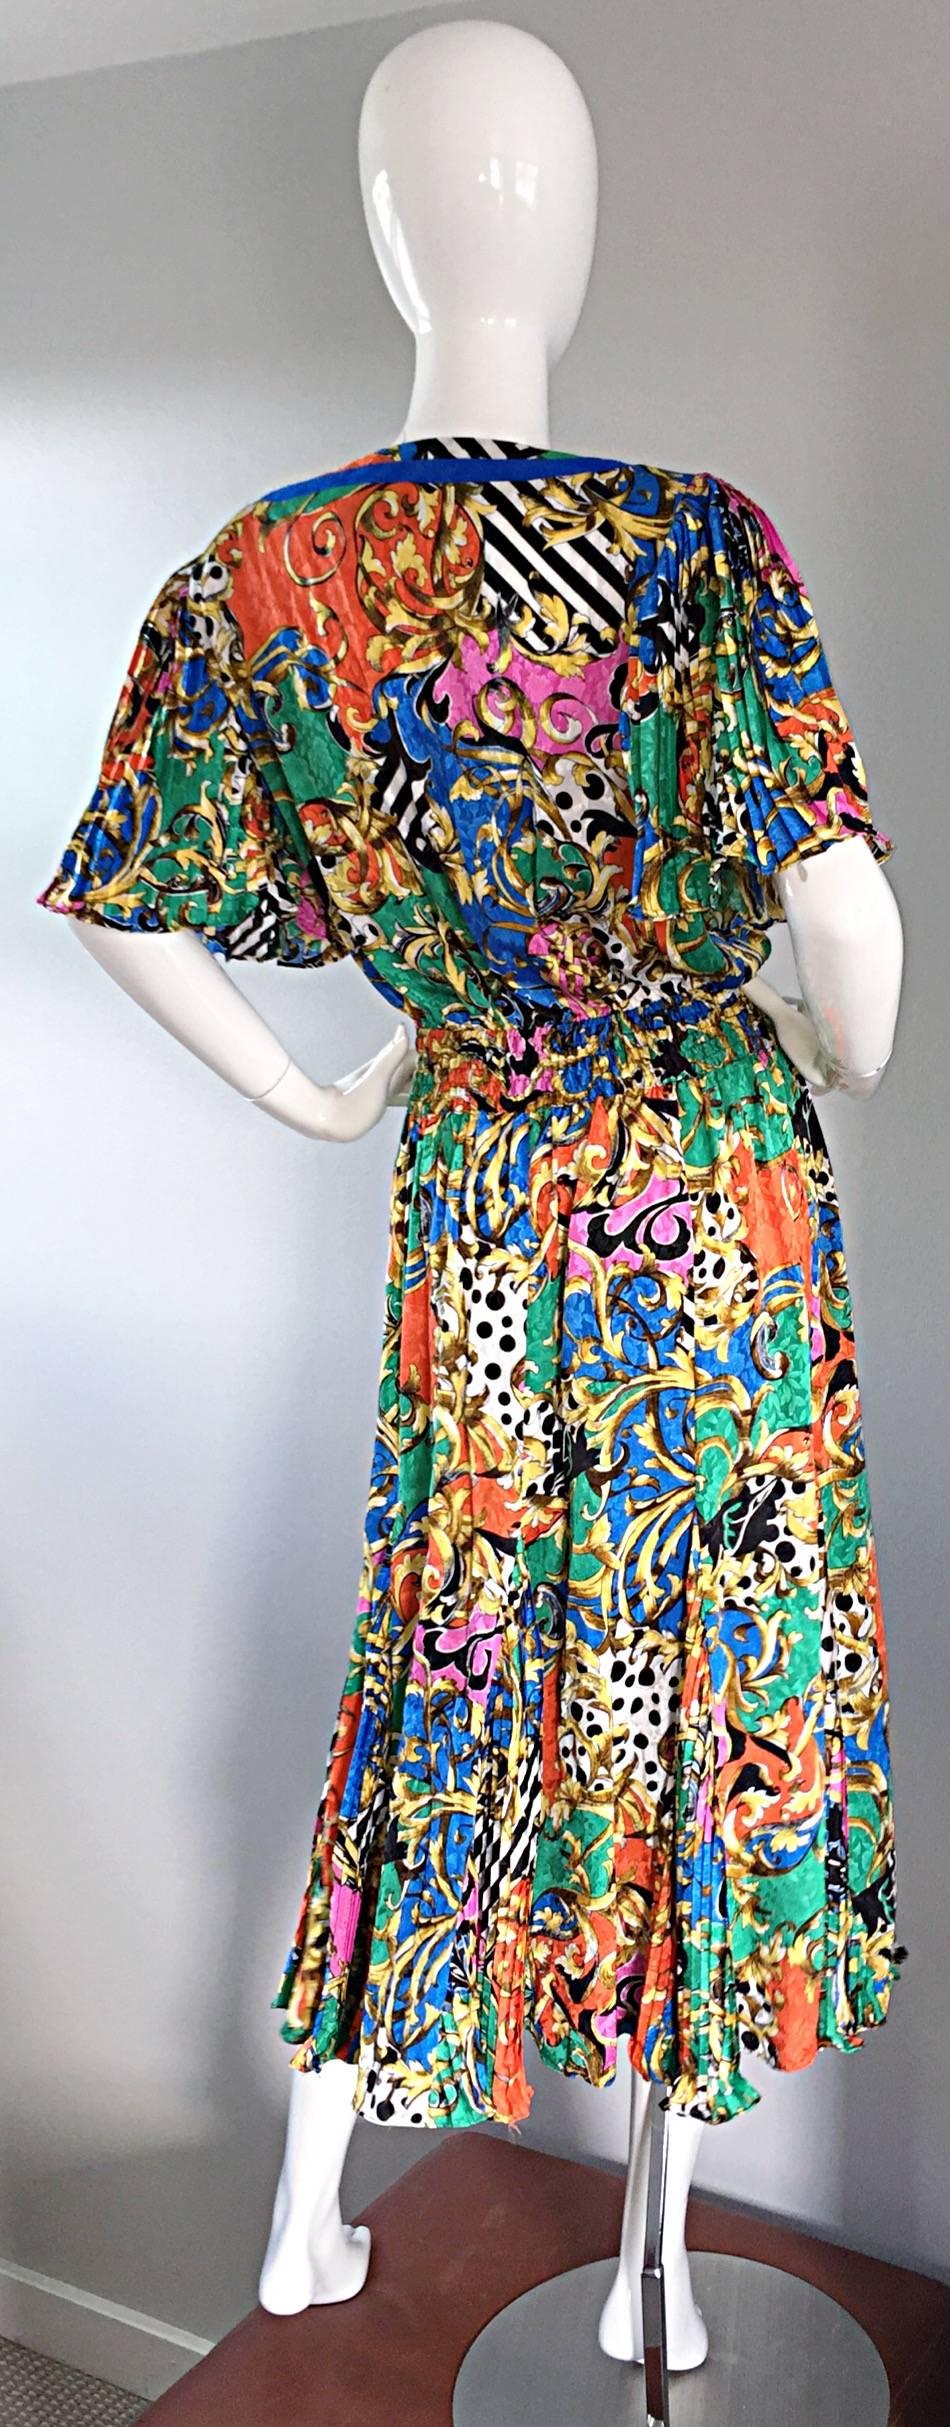 diane freis vintage dress